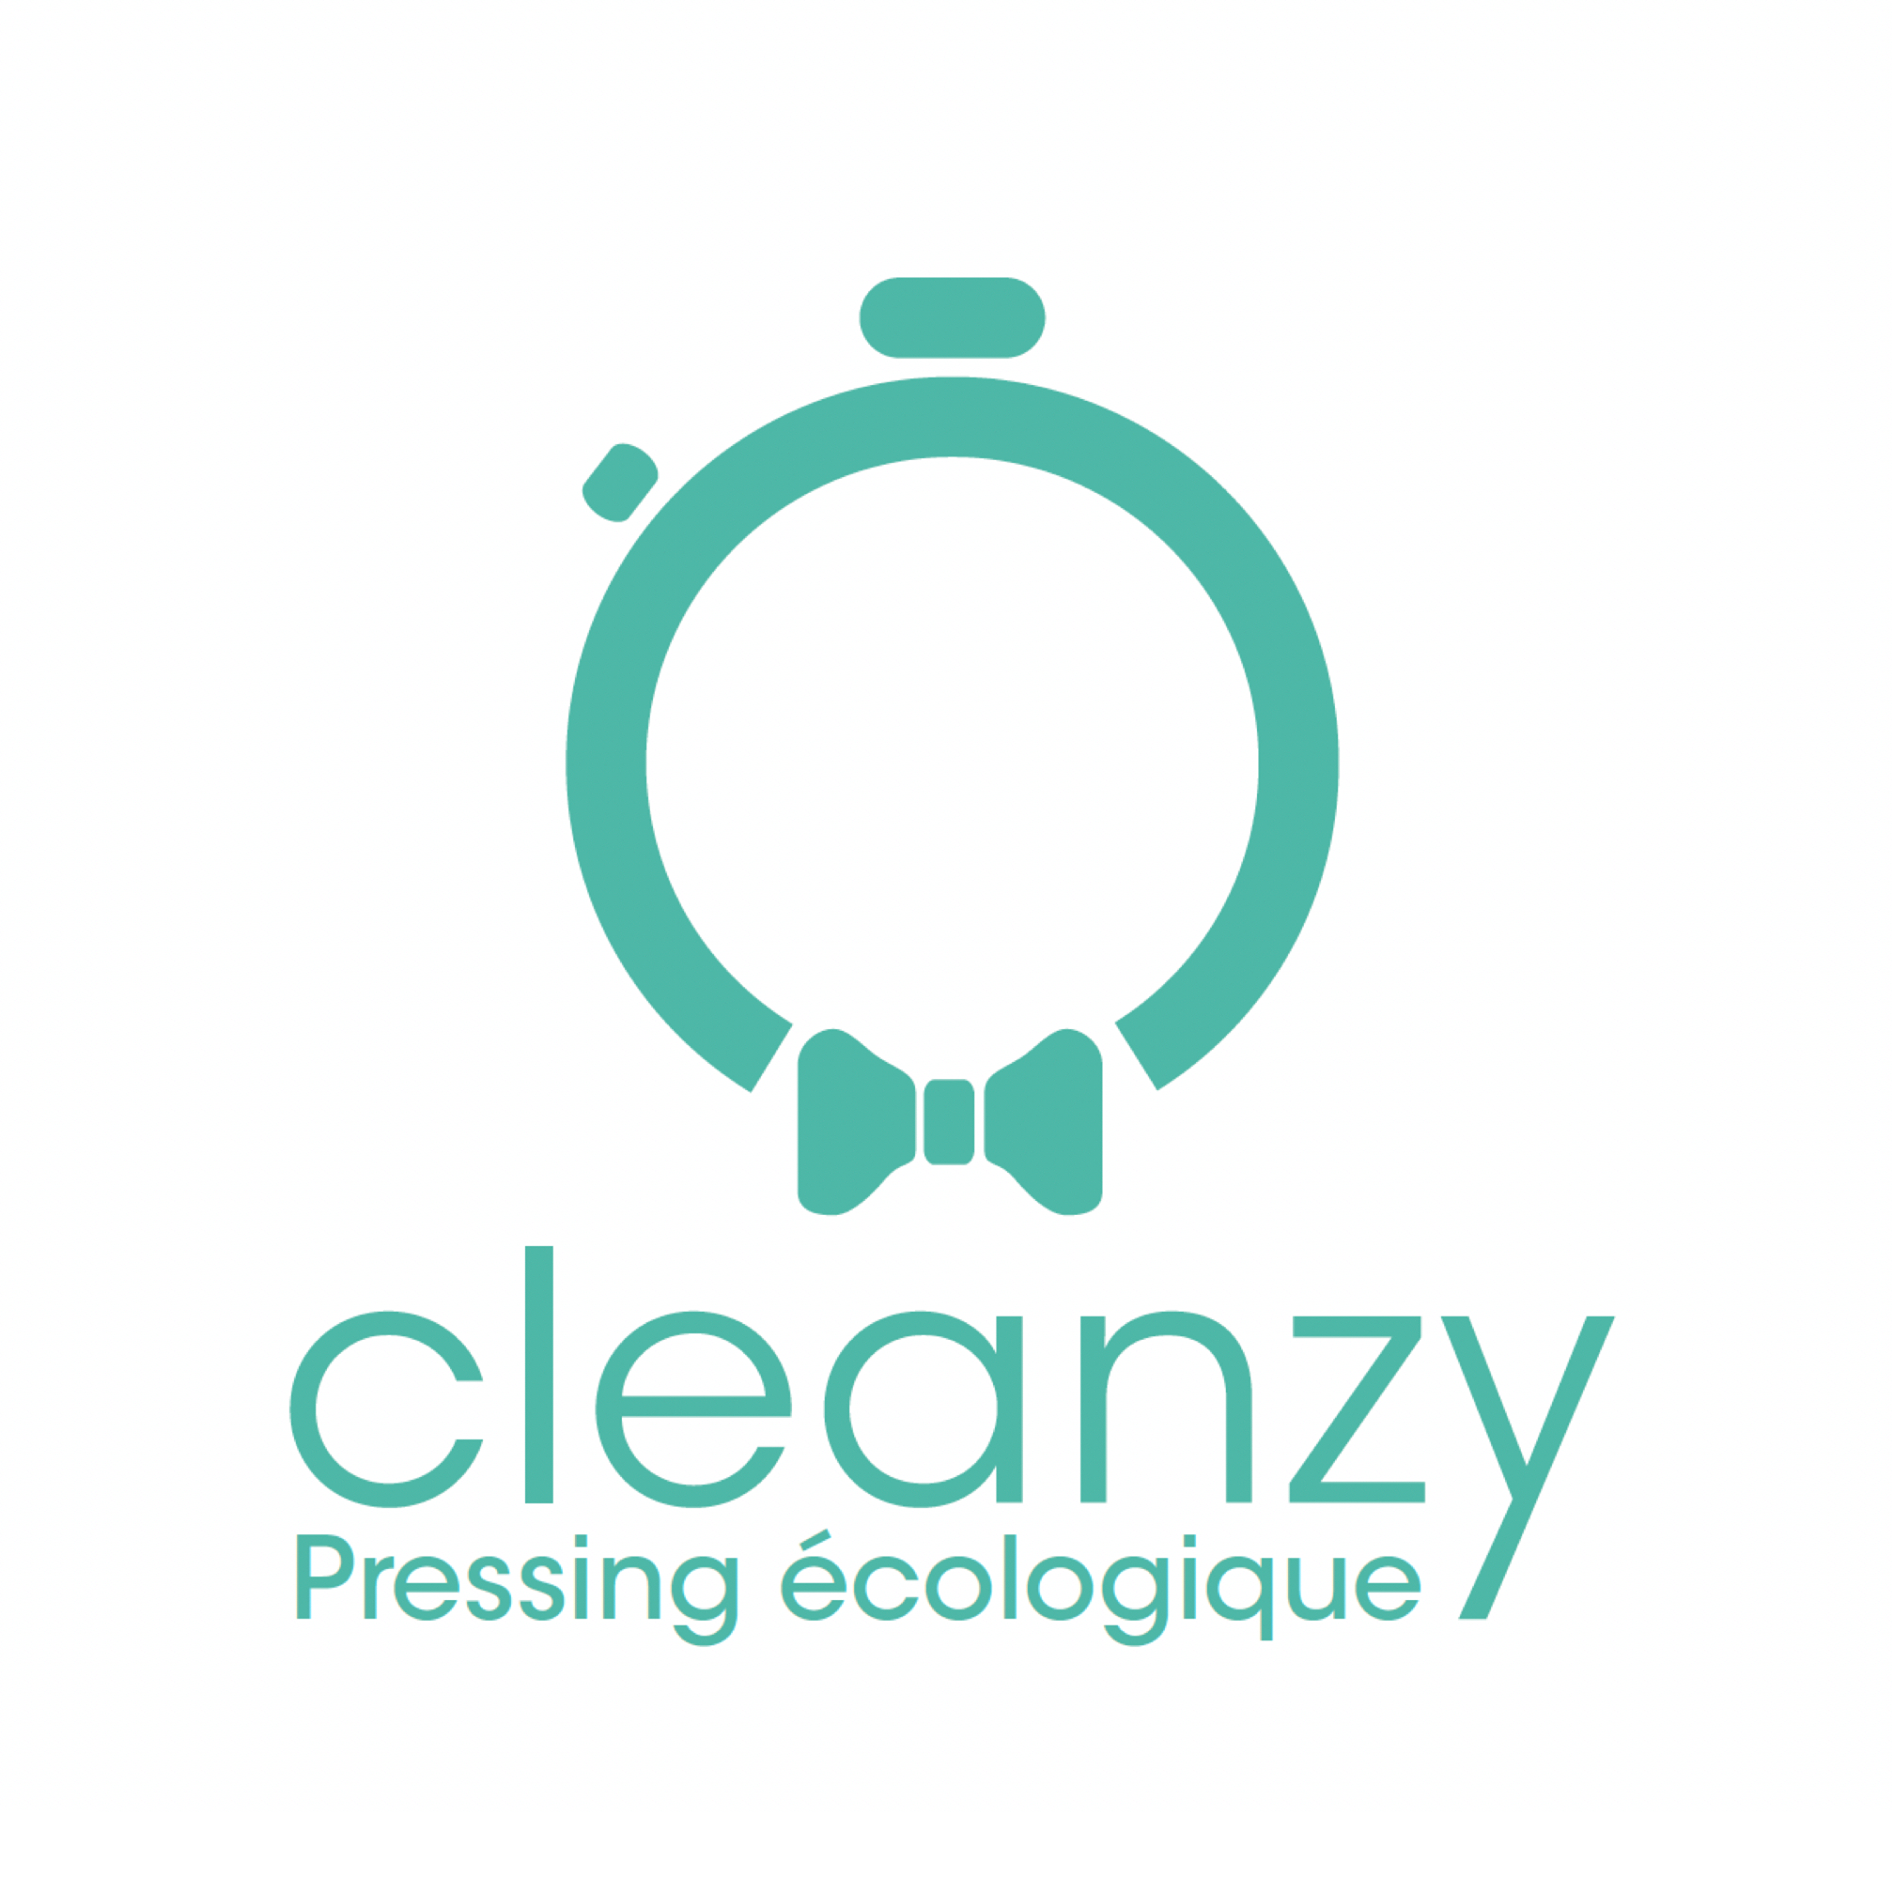 Pressings écologiques : La franchise CLEANZY poursuit son développement au Maroc